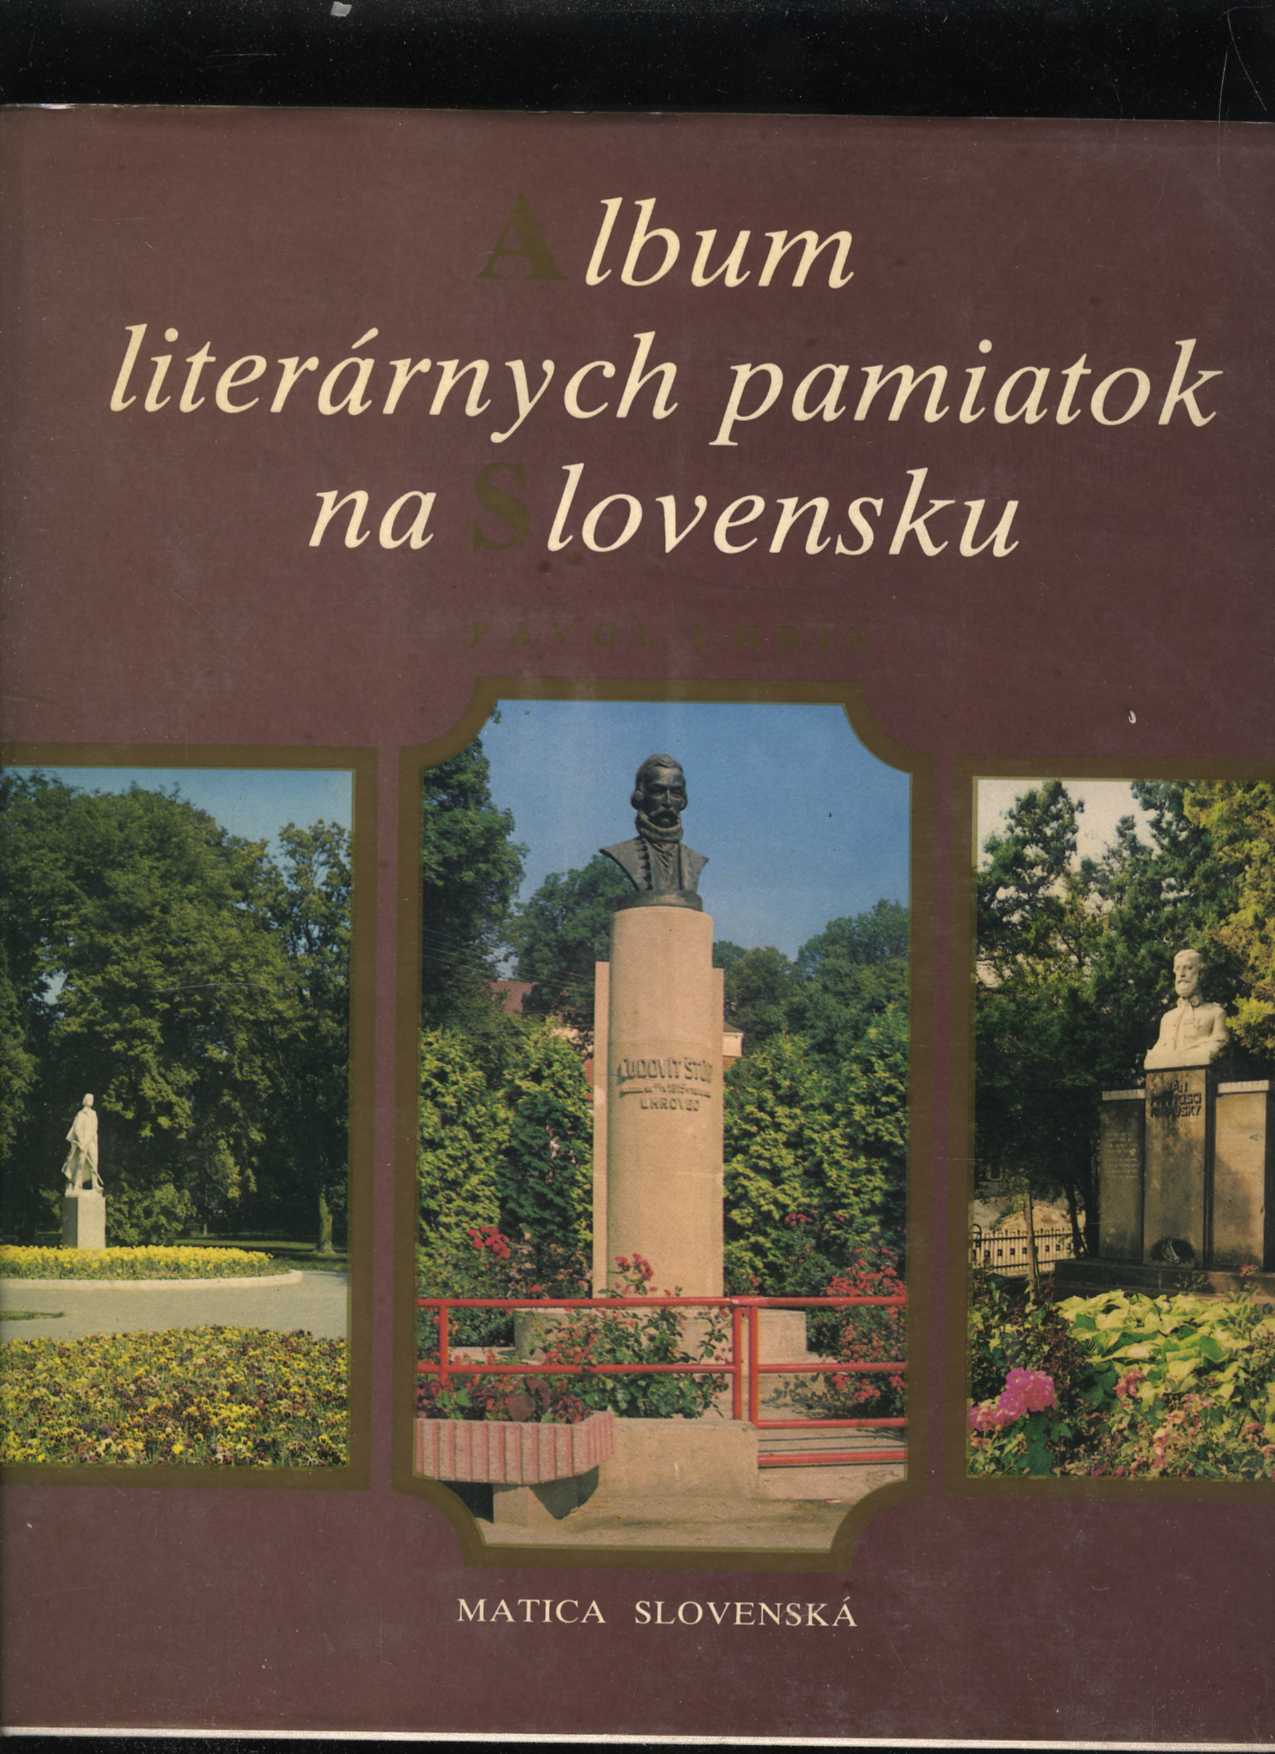 Album literárnych pamiatok na Slovensku (Pvol Uhrín)